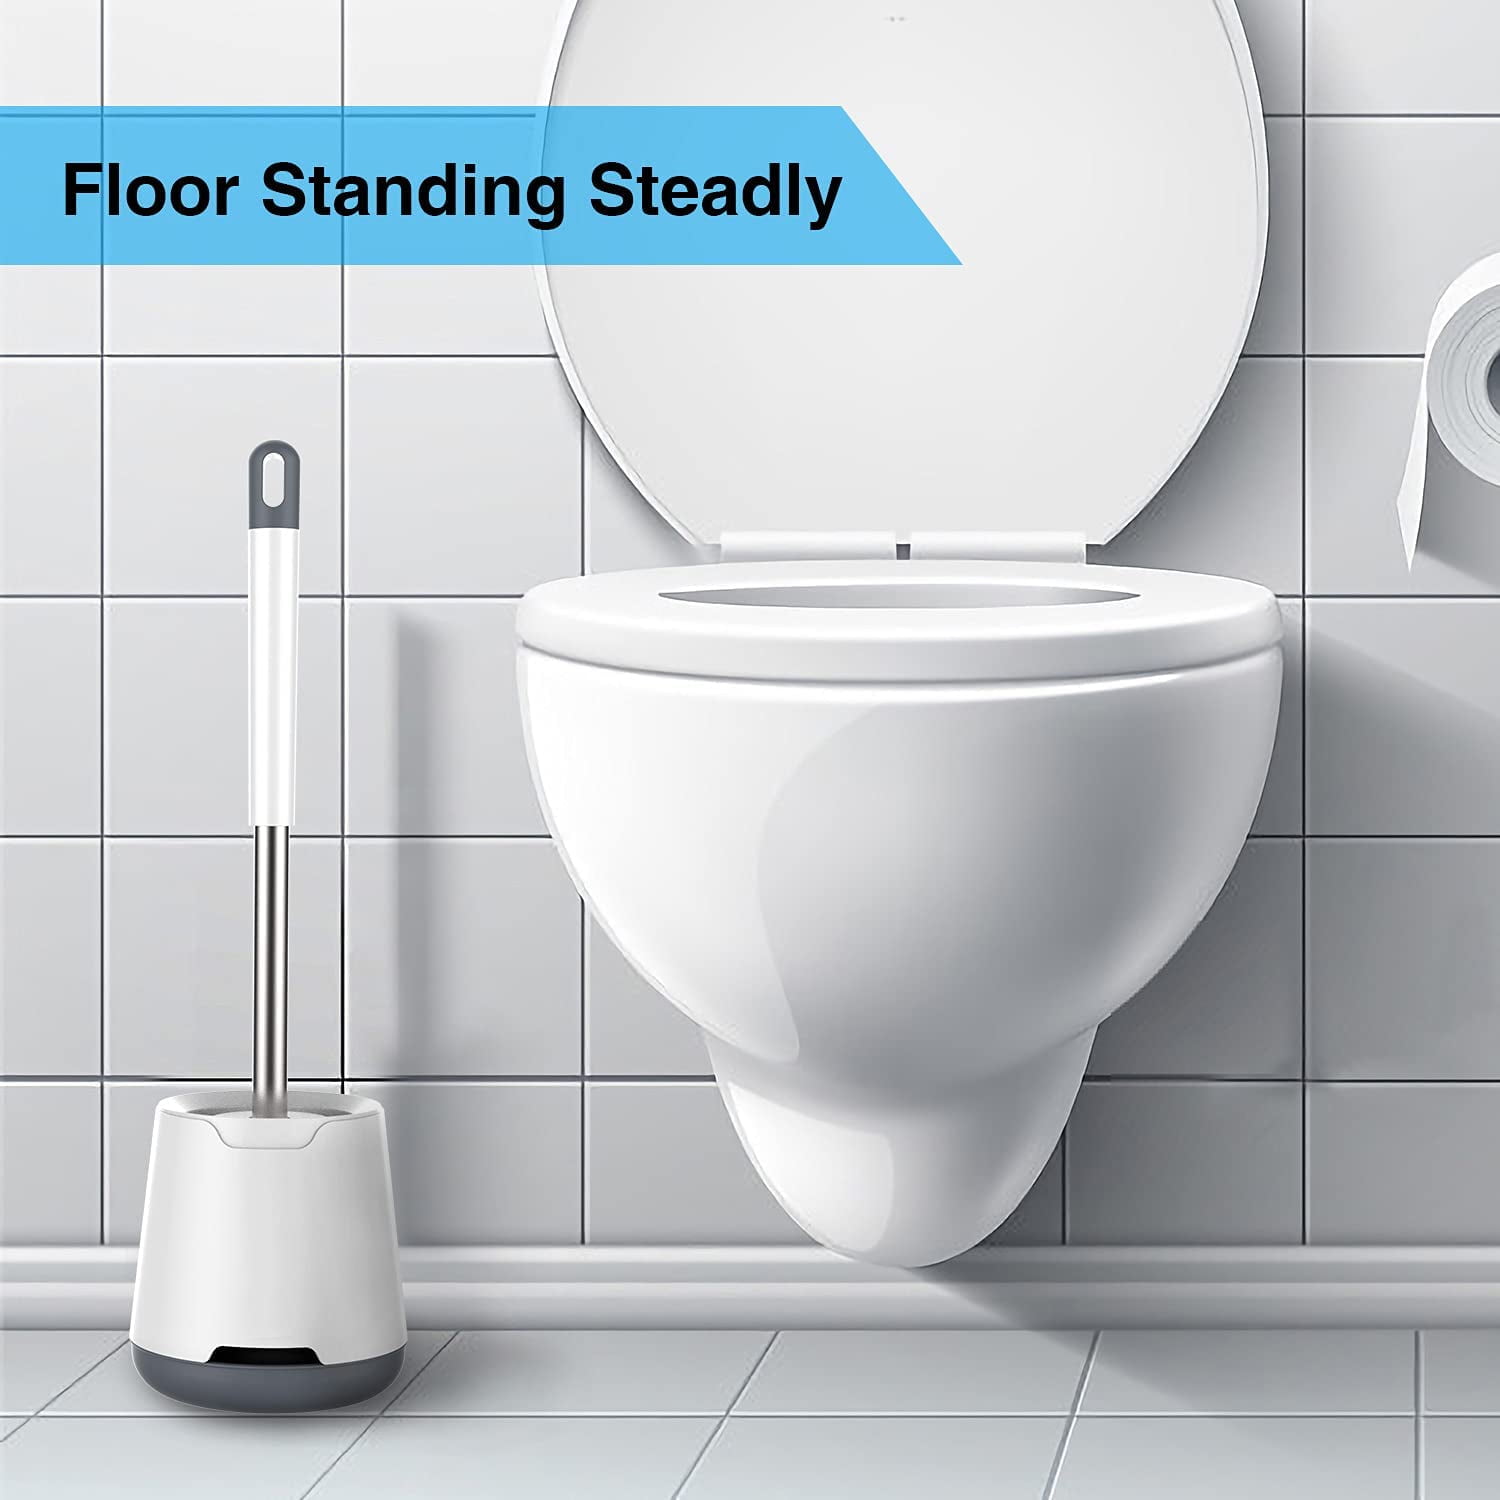 WOTEK Toilettenbürste Klobürste Silikon mit Schnell Trocknendem Halter Stehen WC Bürste Edelstahl Griff für Badezimmer und Toilette